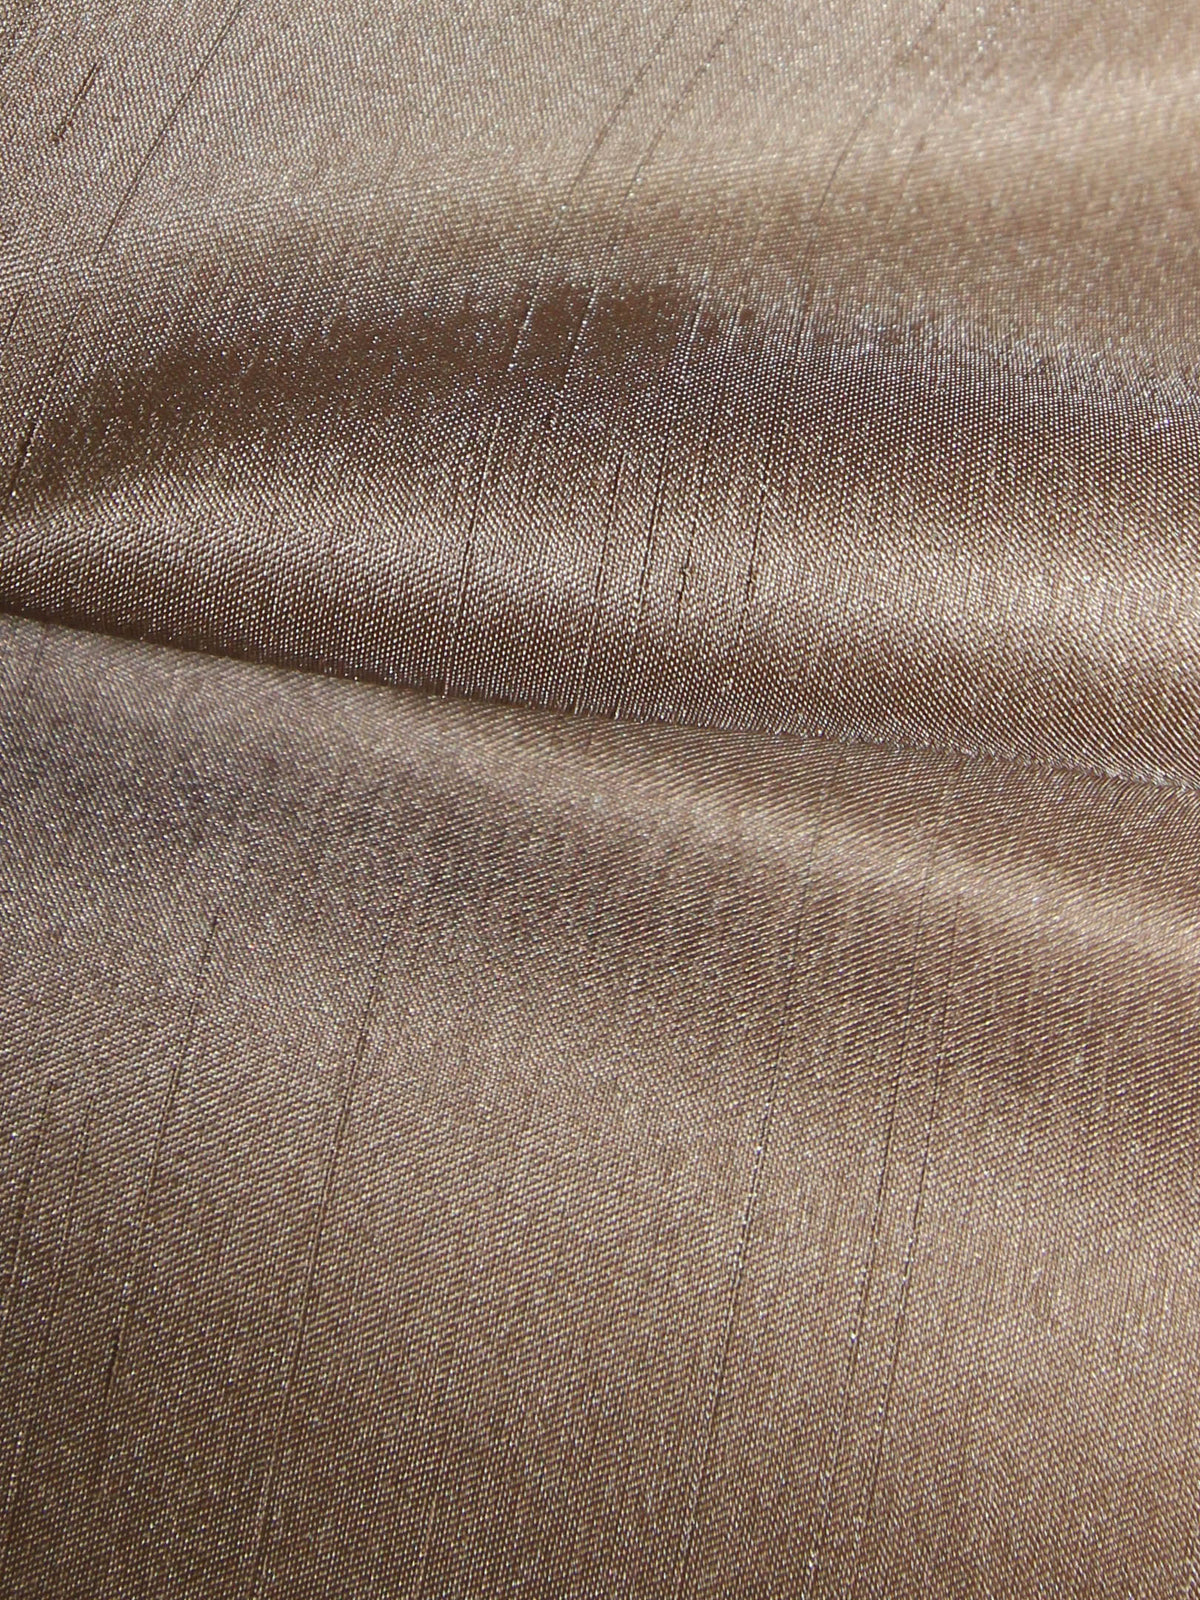 Dupion en satin de polyester taupe - Clarté